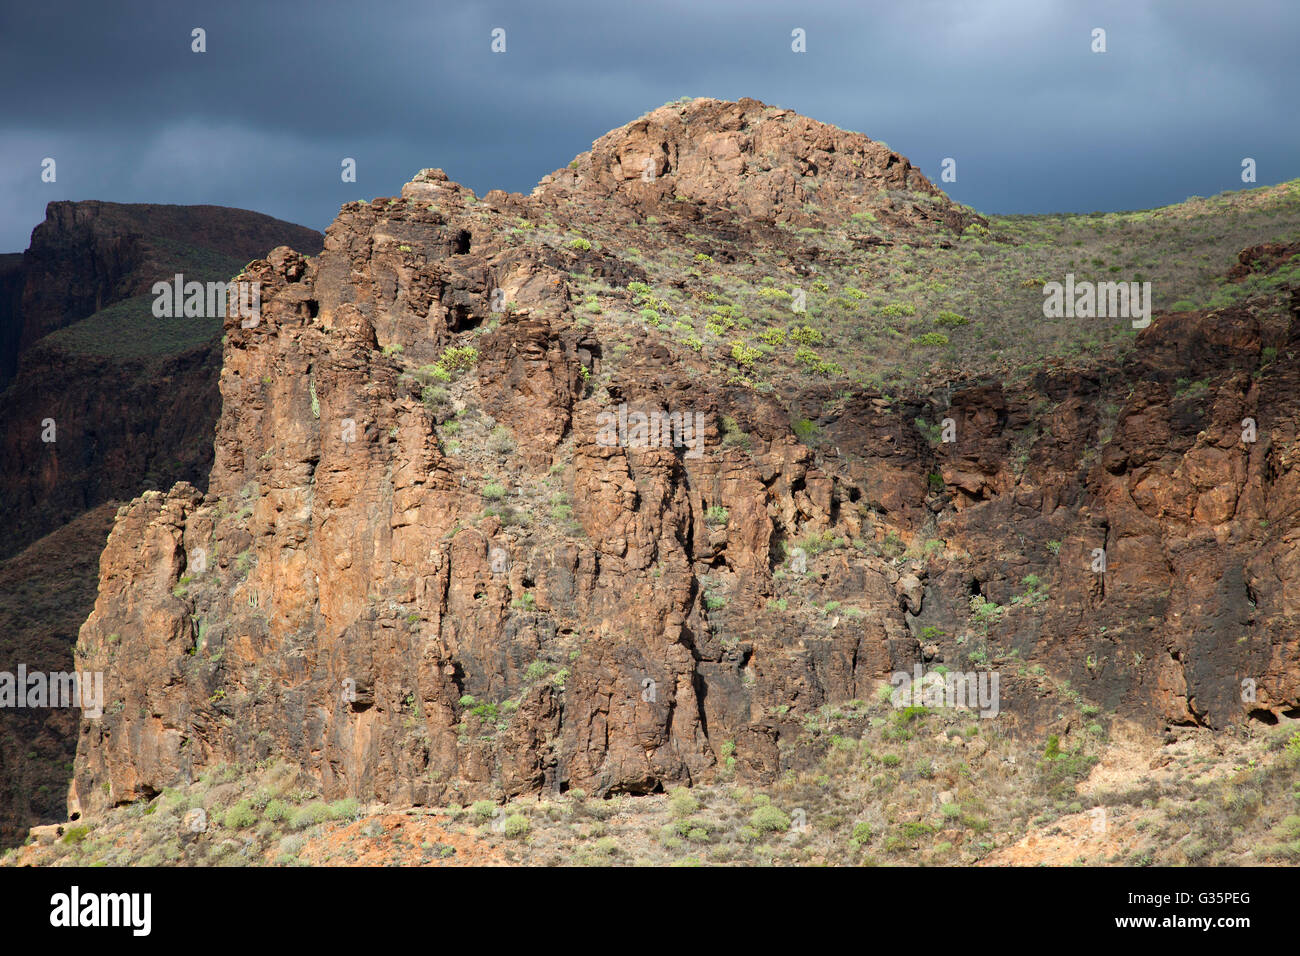 panorama of the Barranco de Fataga, Gran Canaria island, Canary archipelago, Spain, Europe Stock Photo